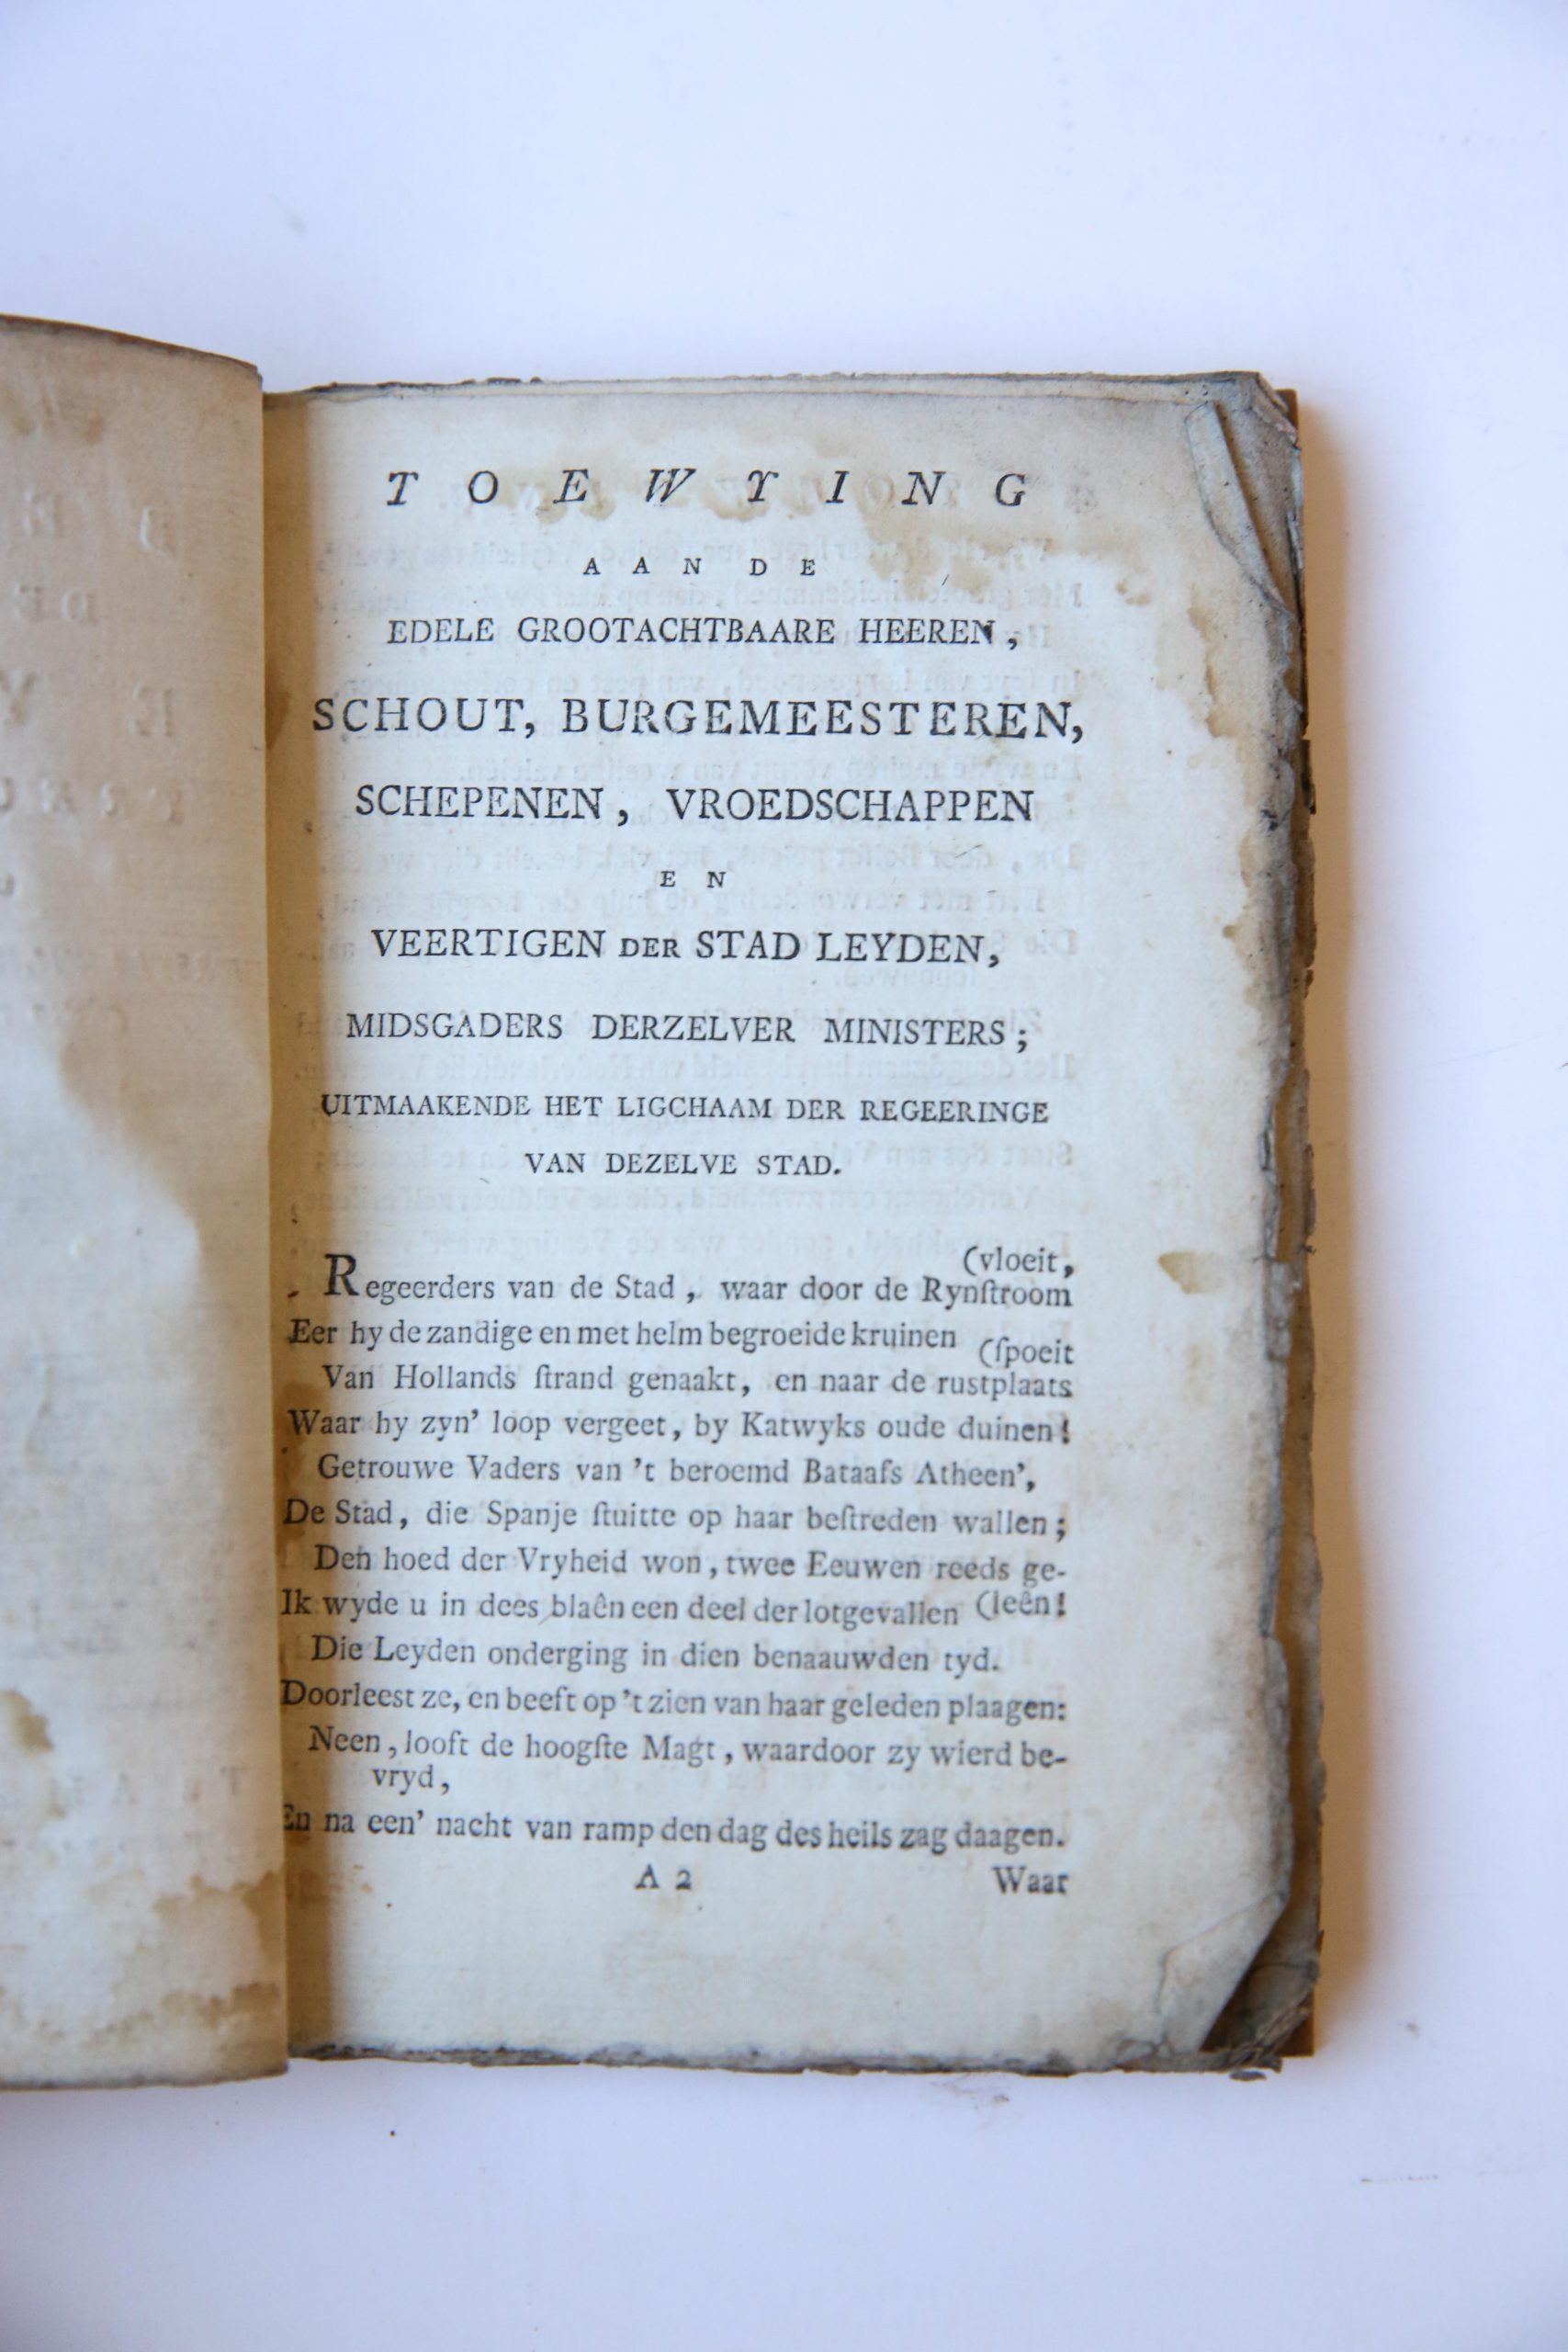 Het Beleg der Stad Leyden. Treurspel [in five acts and in verse] door Lucretia Wilhelmina van Winter geboren van Merken, Amsterdam, by Pieter Meijer, op den dam 1774, met privilegie, 83 pp.